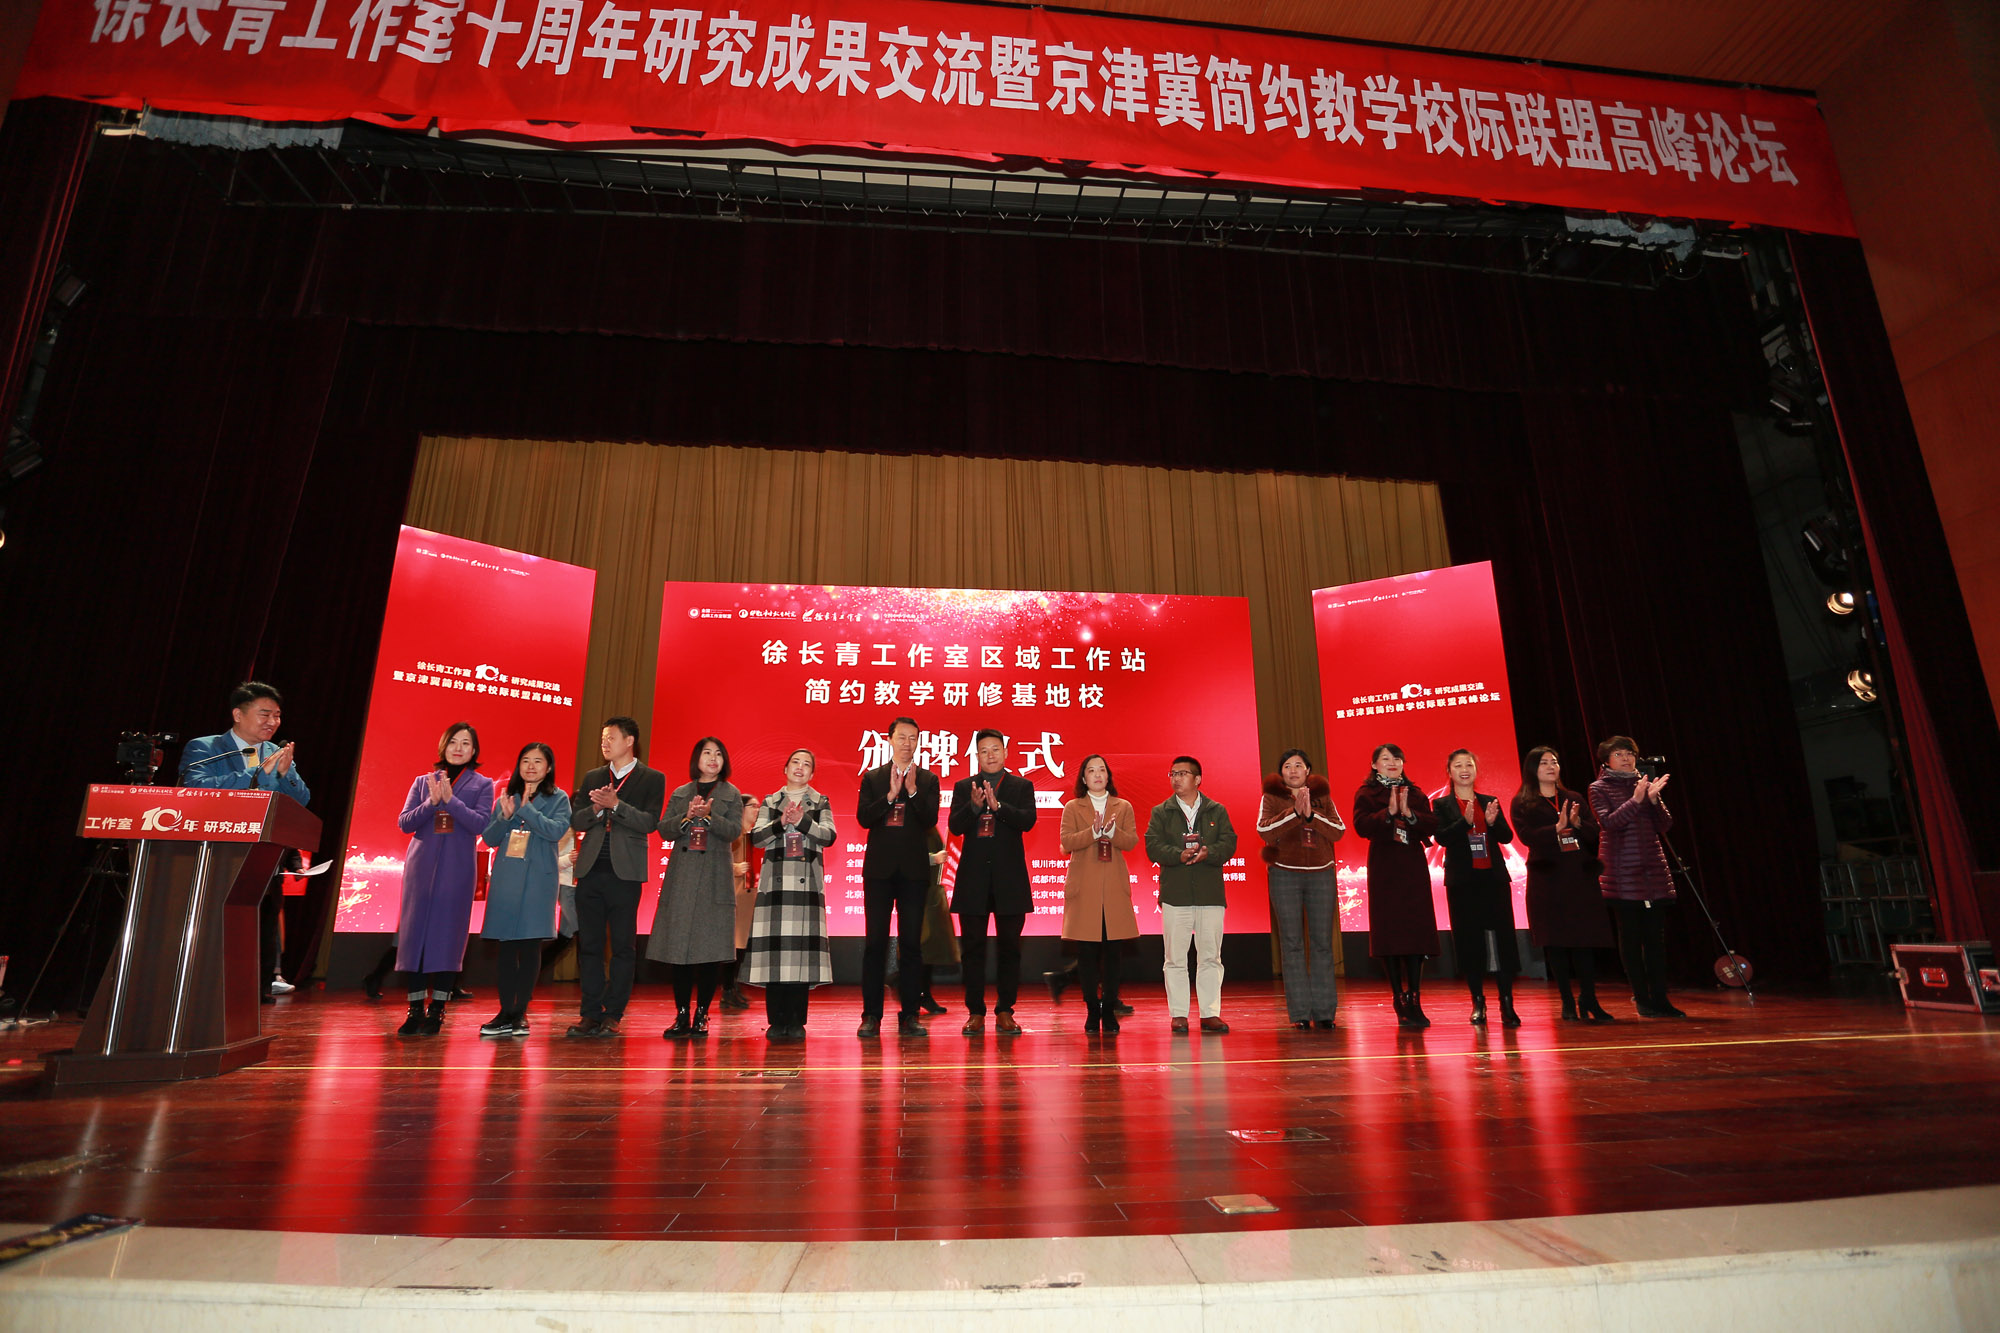 红桥区民进主委，教育局相关领导为徐长青工作室第11批工作站和基地校颁牌。